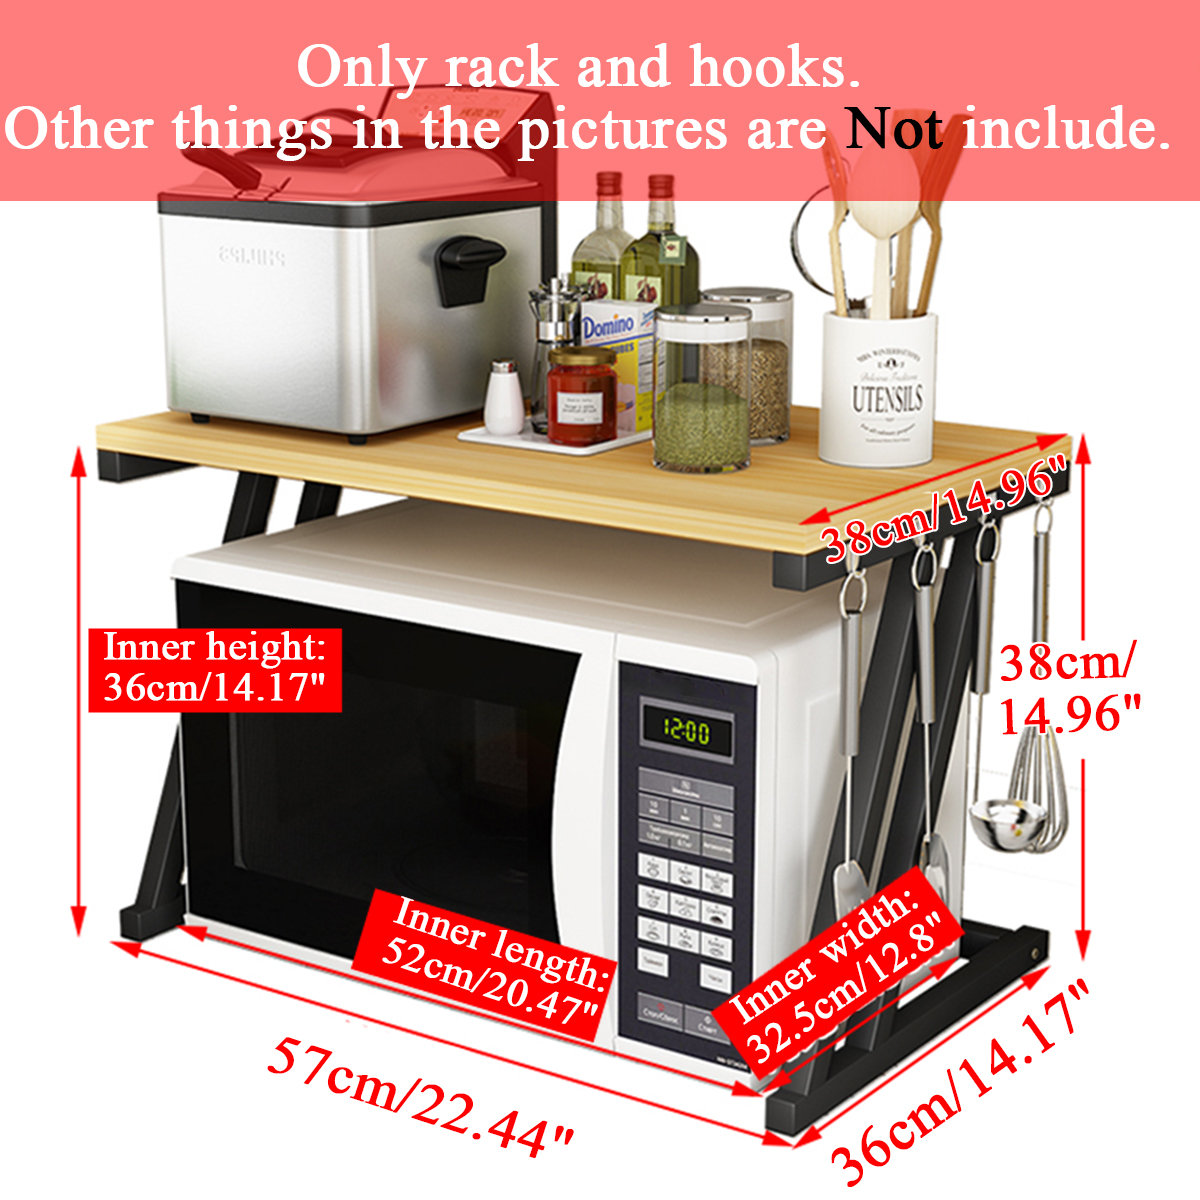 2-Tier-Kitchen-Baker-Rack-Microwave-Oven-Stand-Storage-Cart-Workstation-Shelf-Desktop-Organizer-1633559-7